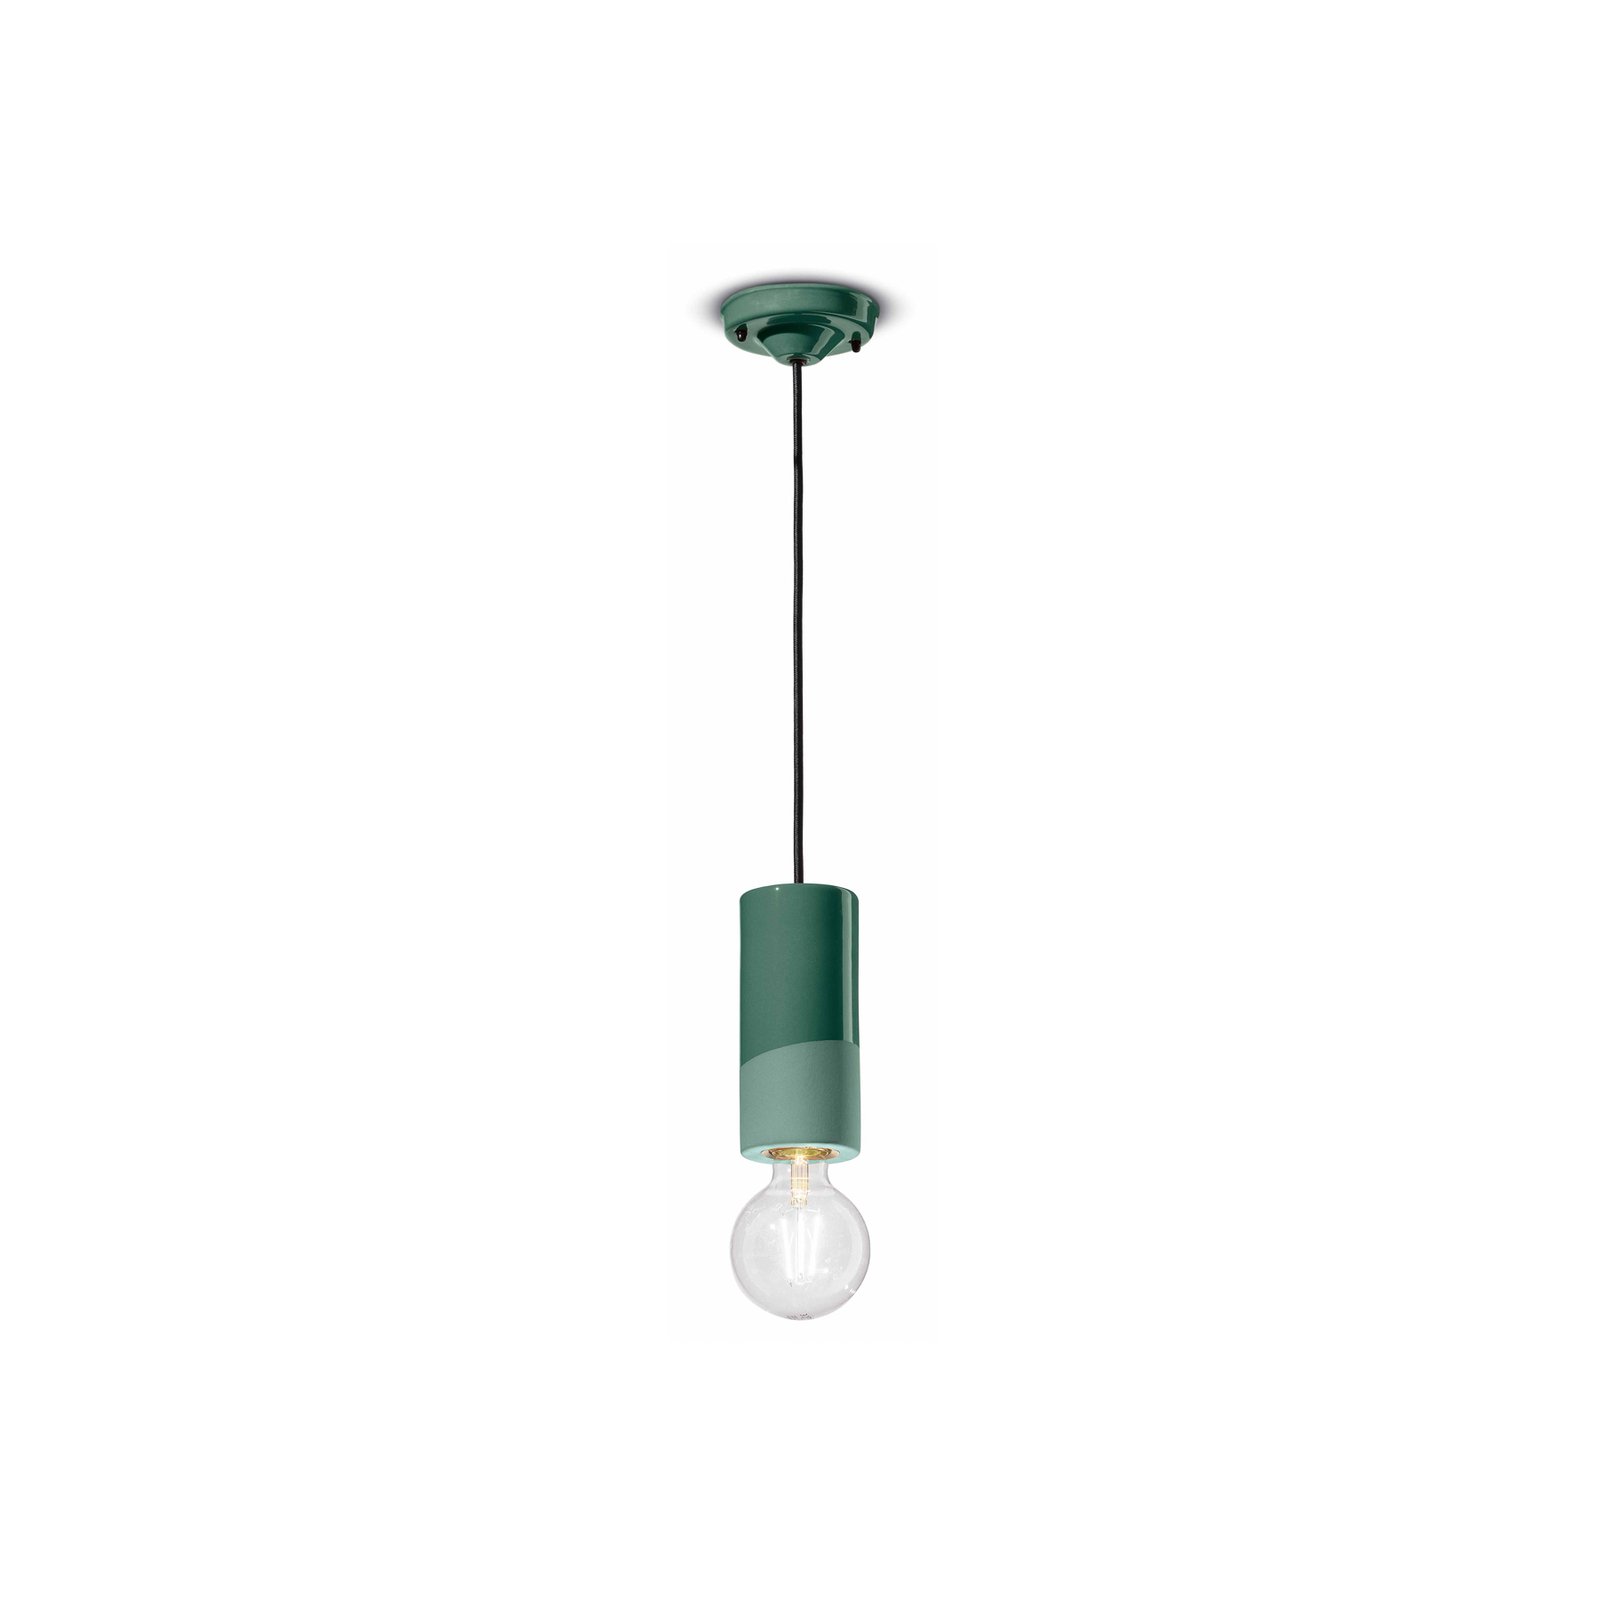 PI viseća svjetiljka, cilindrična, Ø 8 cm zelena